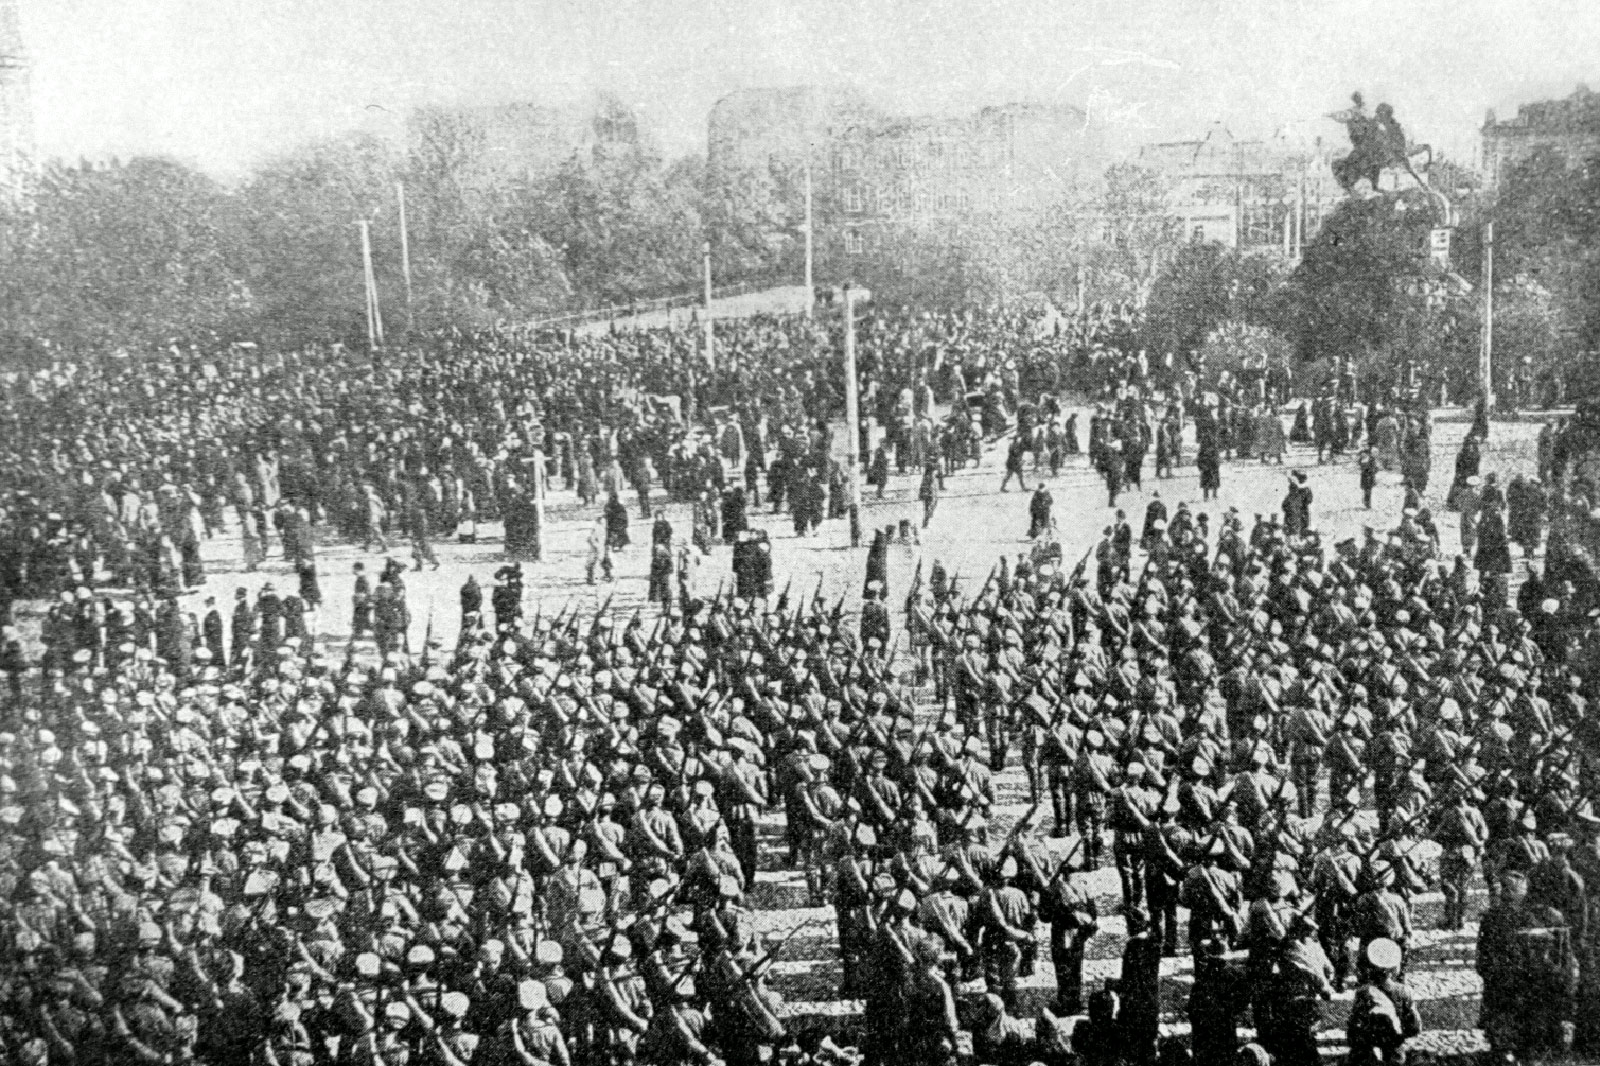 Československé legie (v září 1914 proběhla slavnostní přísaha prvních 716 československých dobrovolníků České družiny